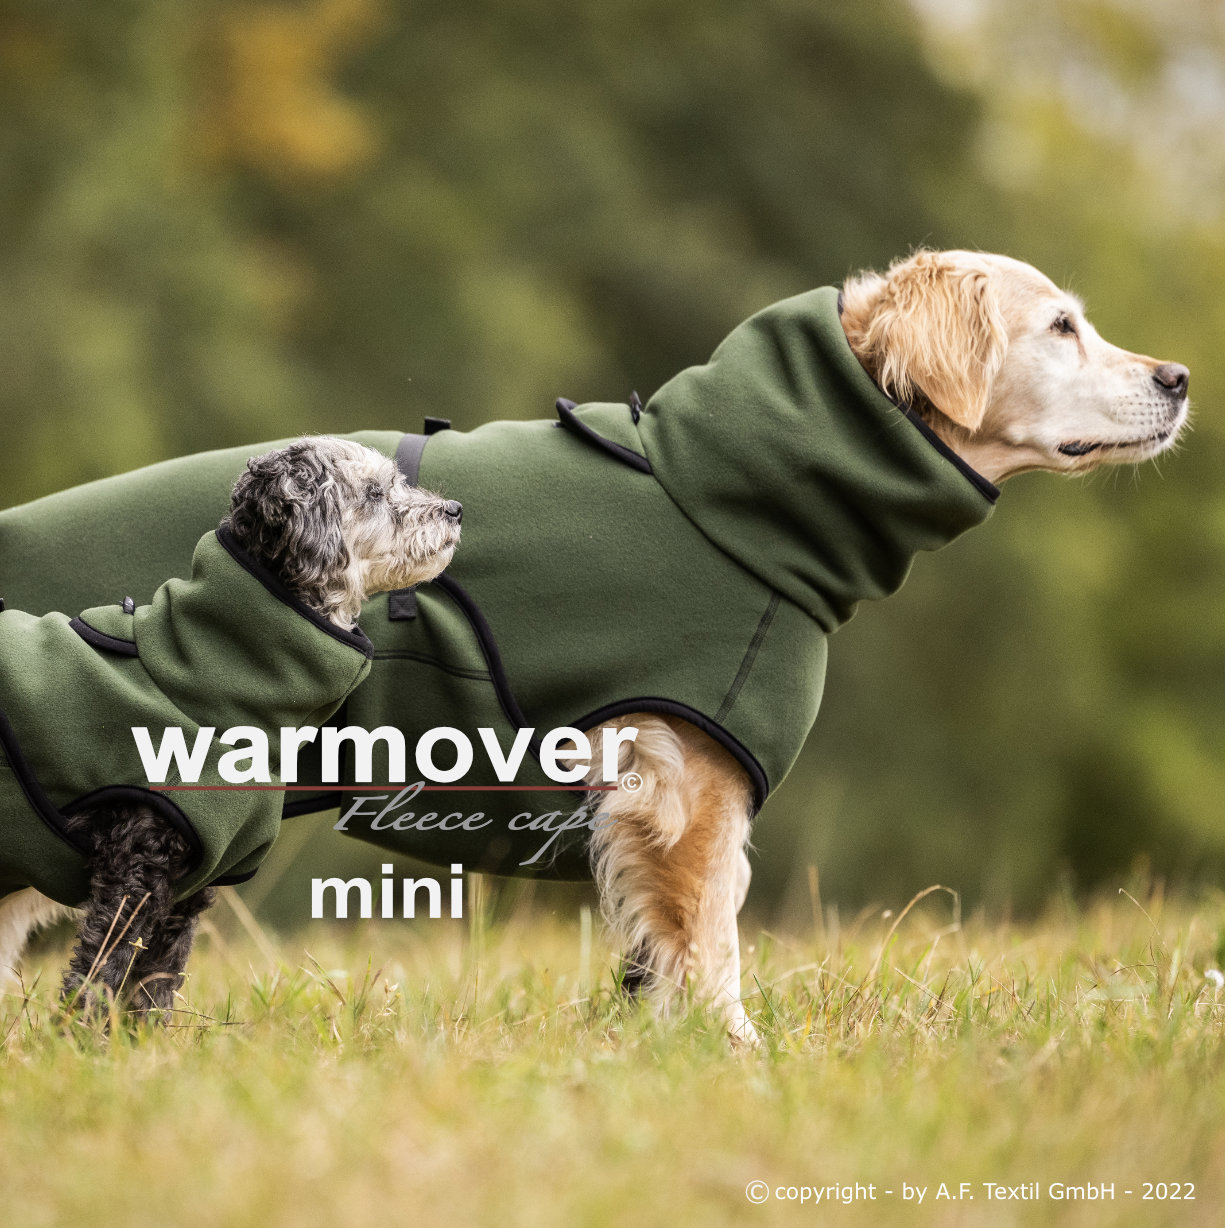 Warmover fleece cape pine green Mini